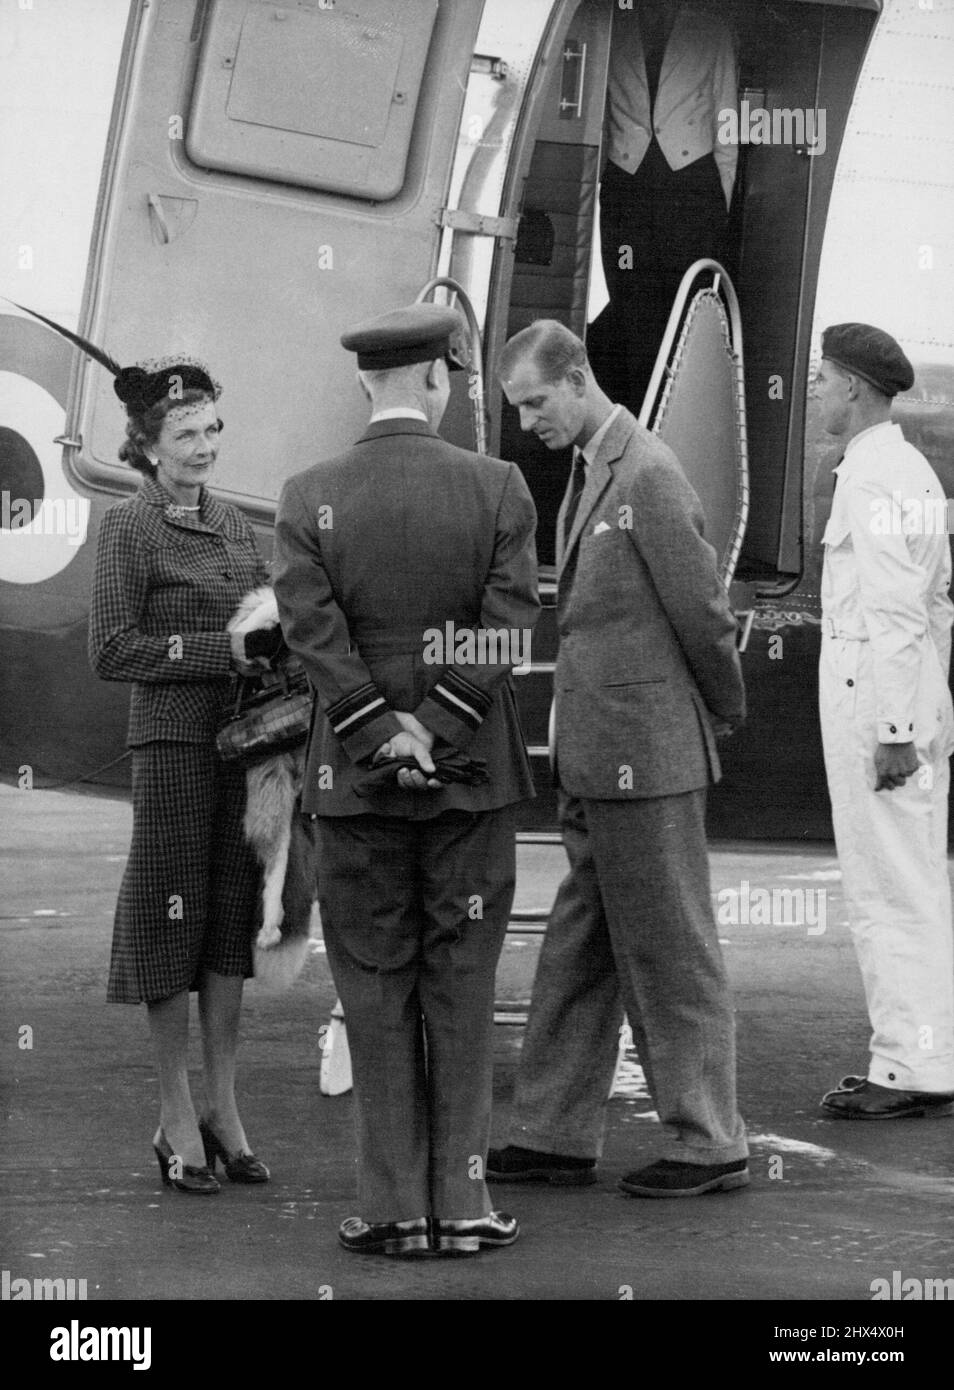 Le duc part pour Malte le duc d'Édimbourg vu en conversation avec Lady Mountbatten et le vice-maréchal de l'air J. A. Gray, officier supérieur du personnel, commandant des transports (de retour à la caméra) à l'aéroport de Londres ce matin 15 octobre avant de partir pour Malte, Où le duc doit reprendre sa carrière navale active comme premier lieutenant dans le destroyer 'Chequrs'. Lady Mountbatten, qui rejoint son mari, le Vice-amiral Earl Mountbatten, de Birmanie, à Malte, a pris l'avion avec le duc. 8 juillet 1952. (Photo par photo de presse associée). Banque D'Images